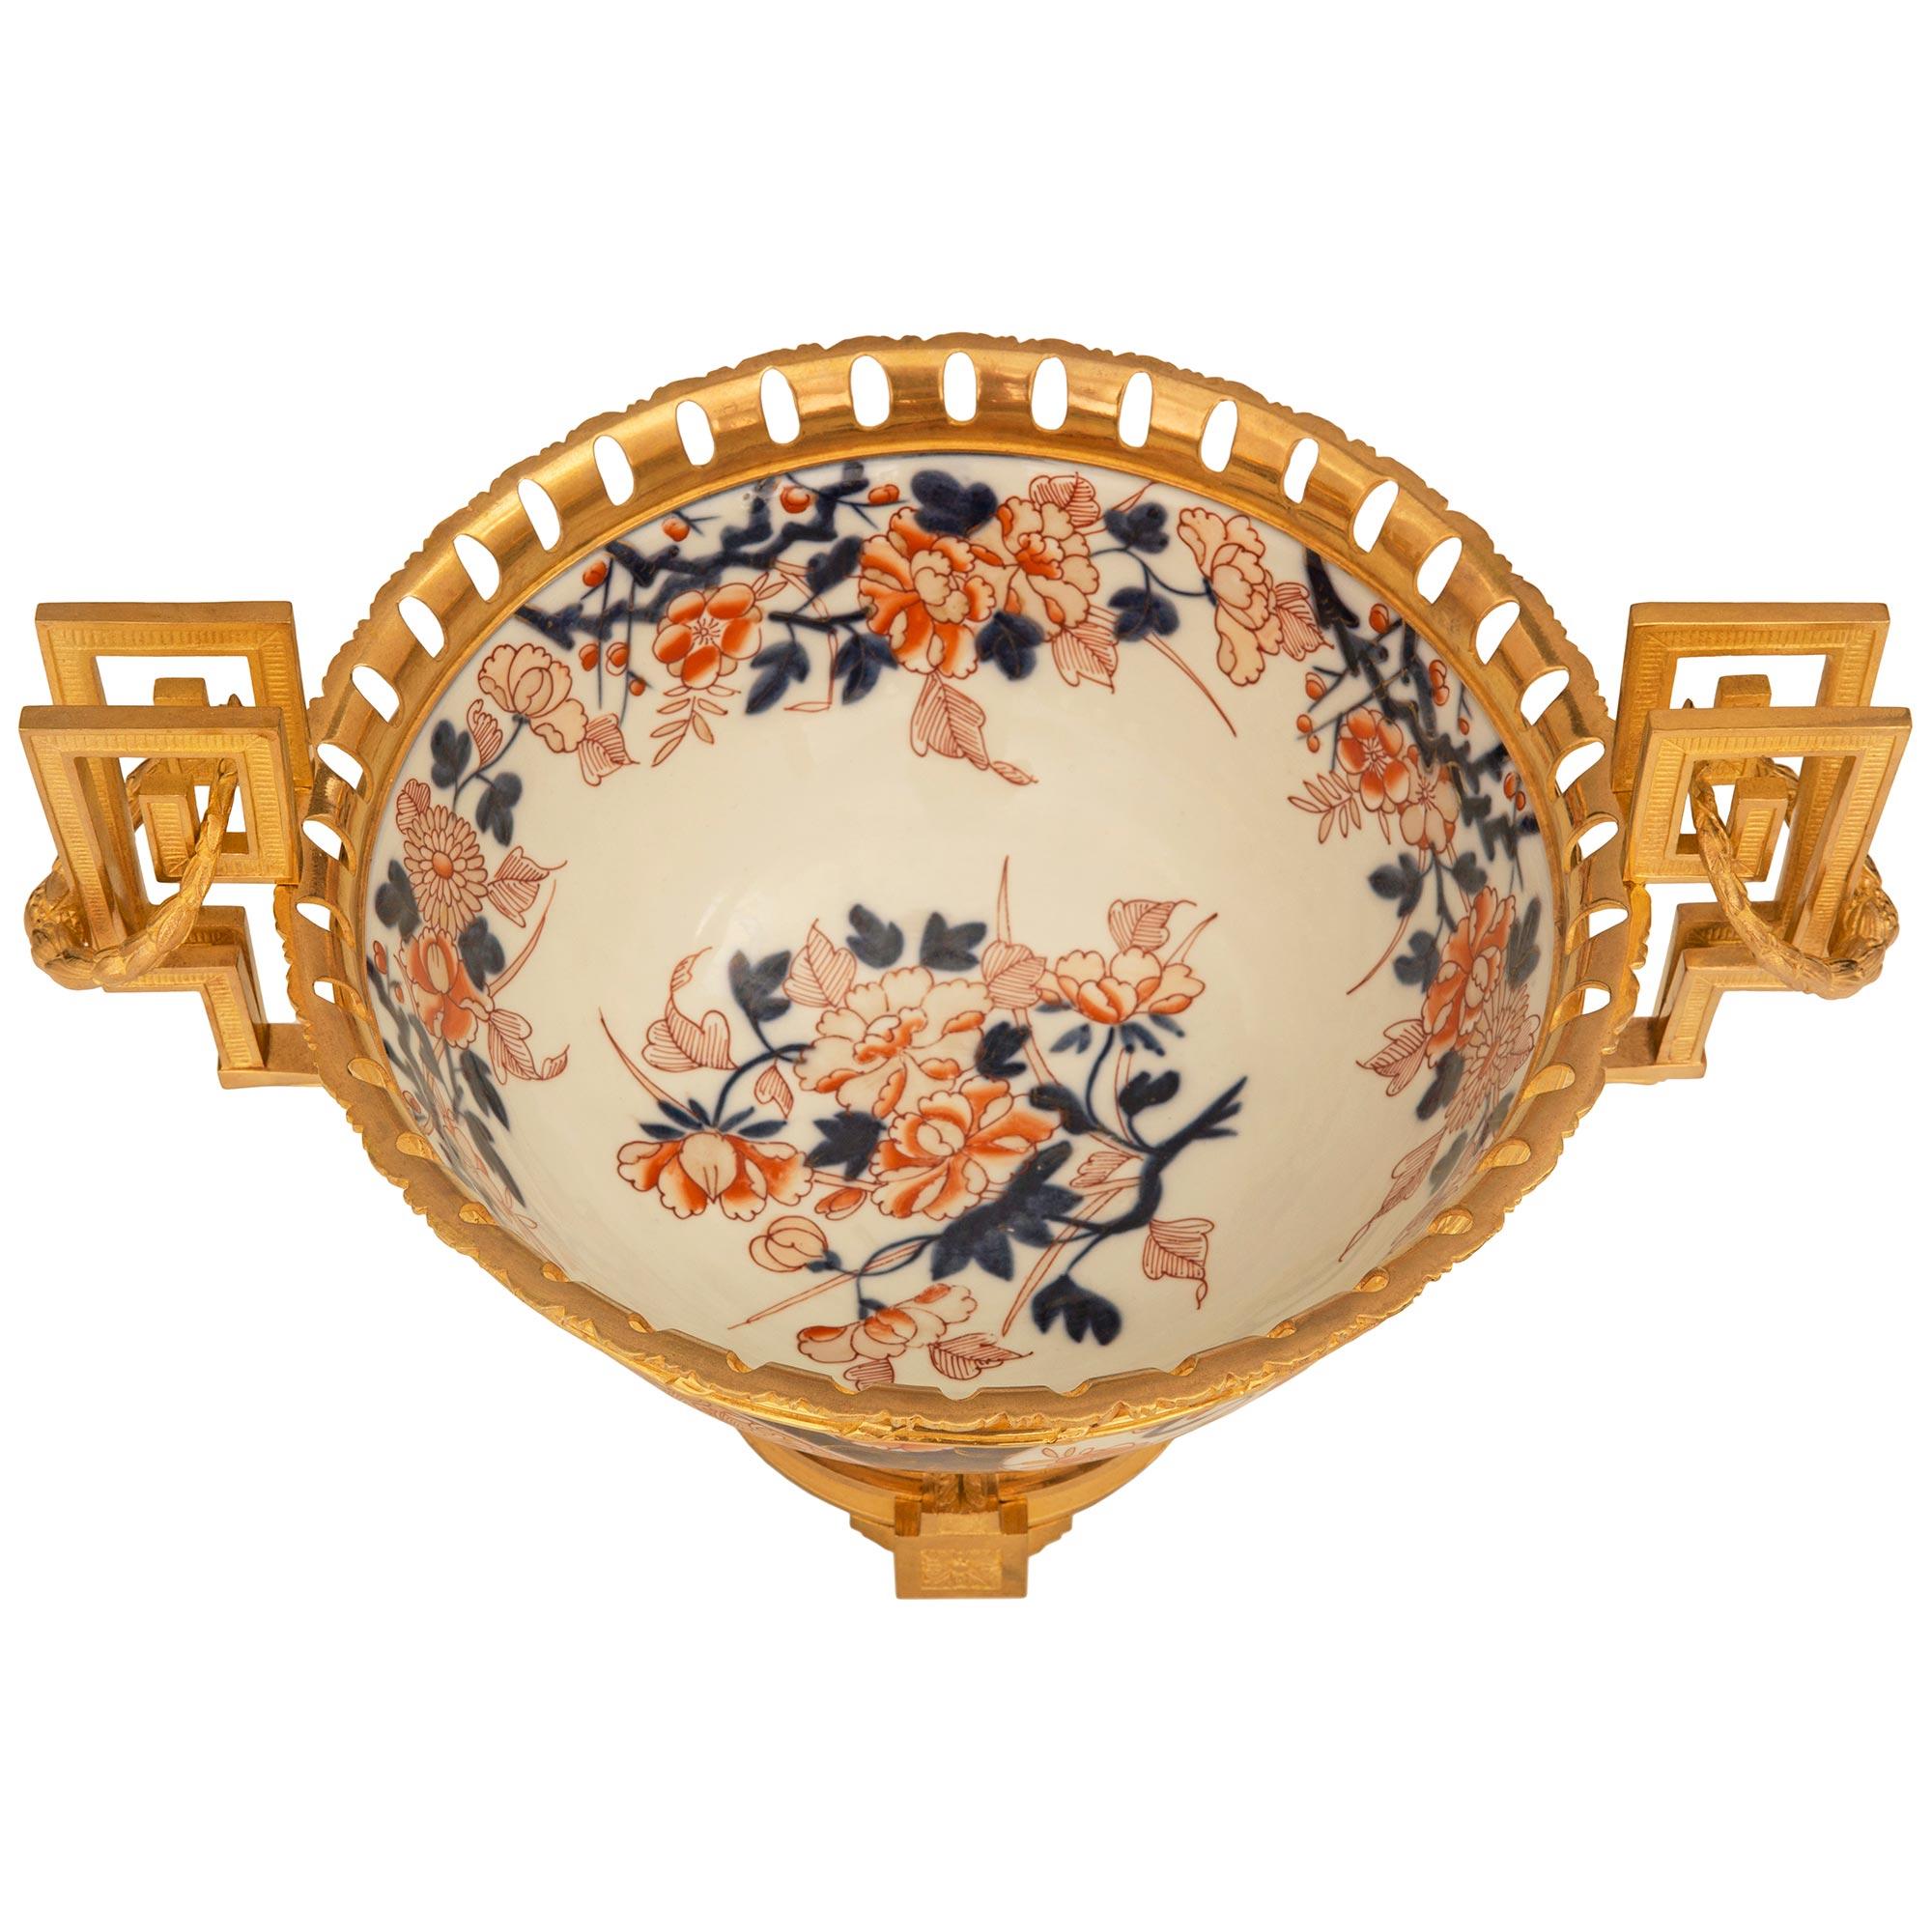 Un élégant centre de table japonais du XIXe siècle en porcelaine Imari et en bronze doré. La pièce centrale repose sur une belle base française en bronze doré de style Louis XVI, avec quatre supports en bloc et des rosettes centrales richement